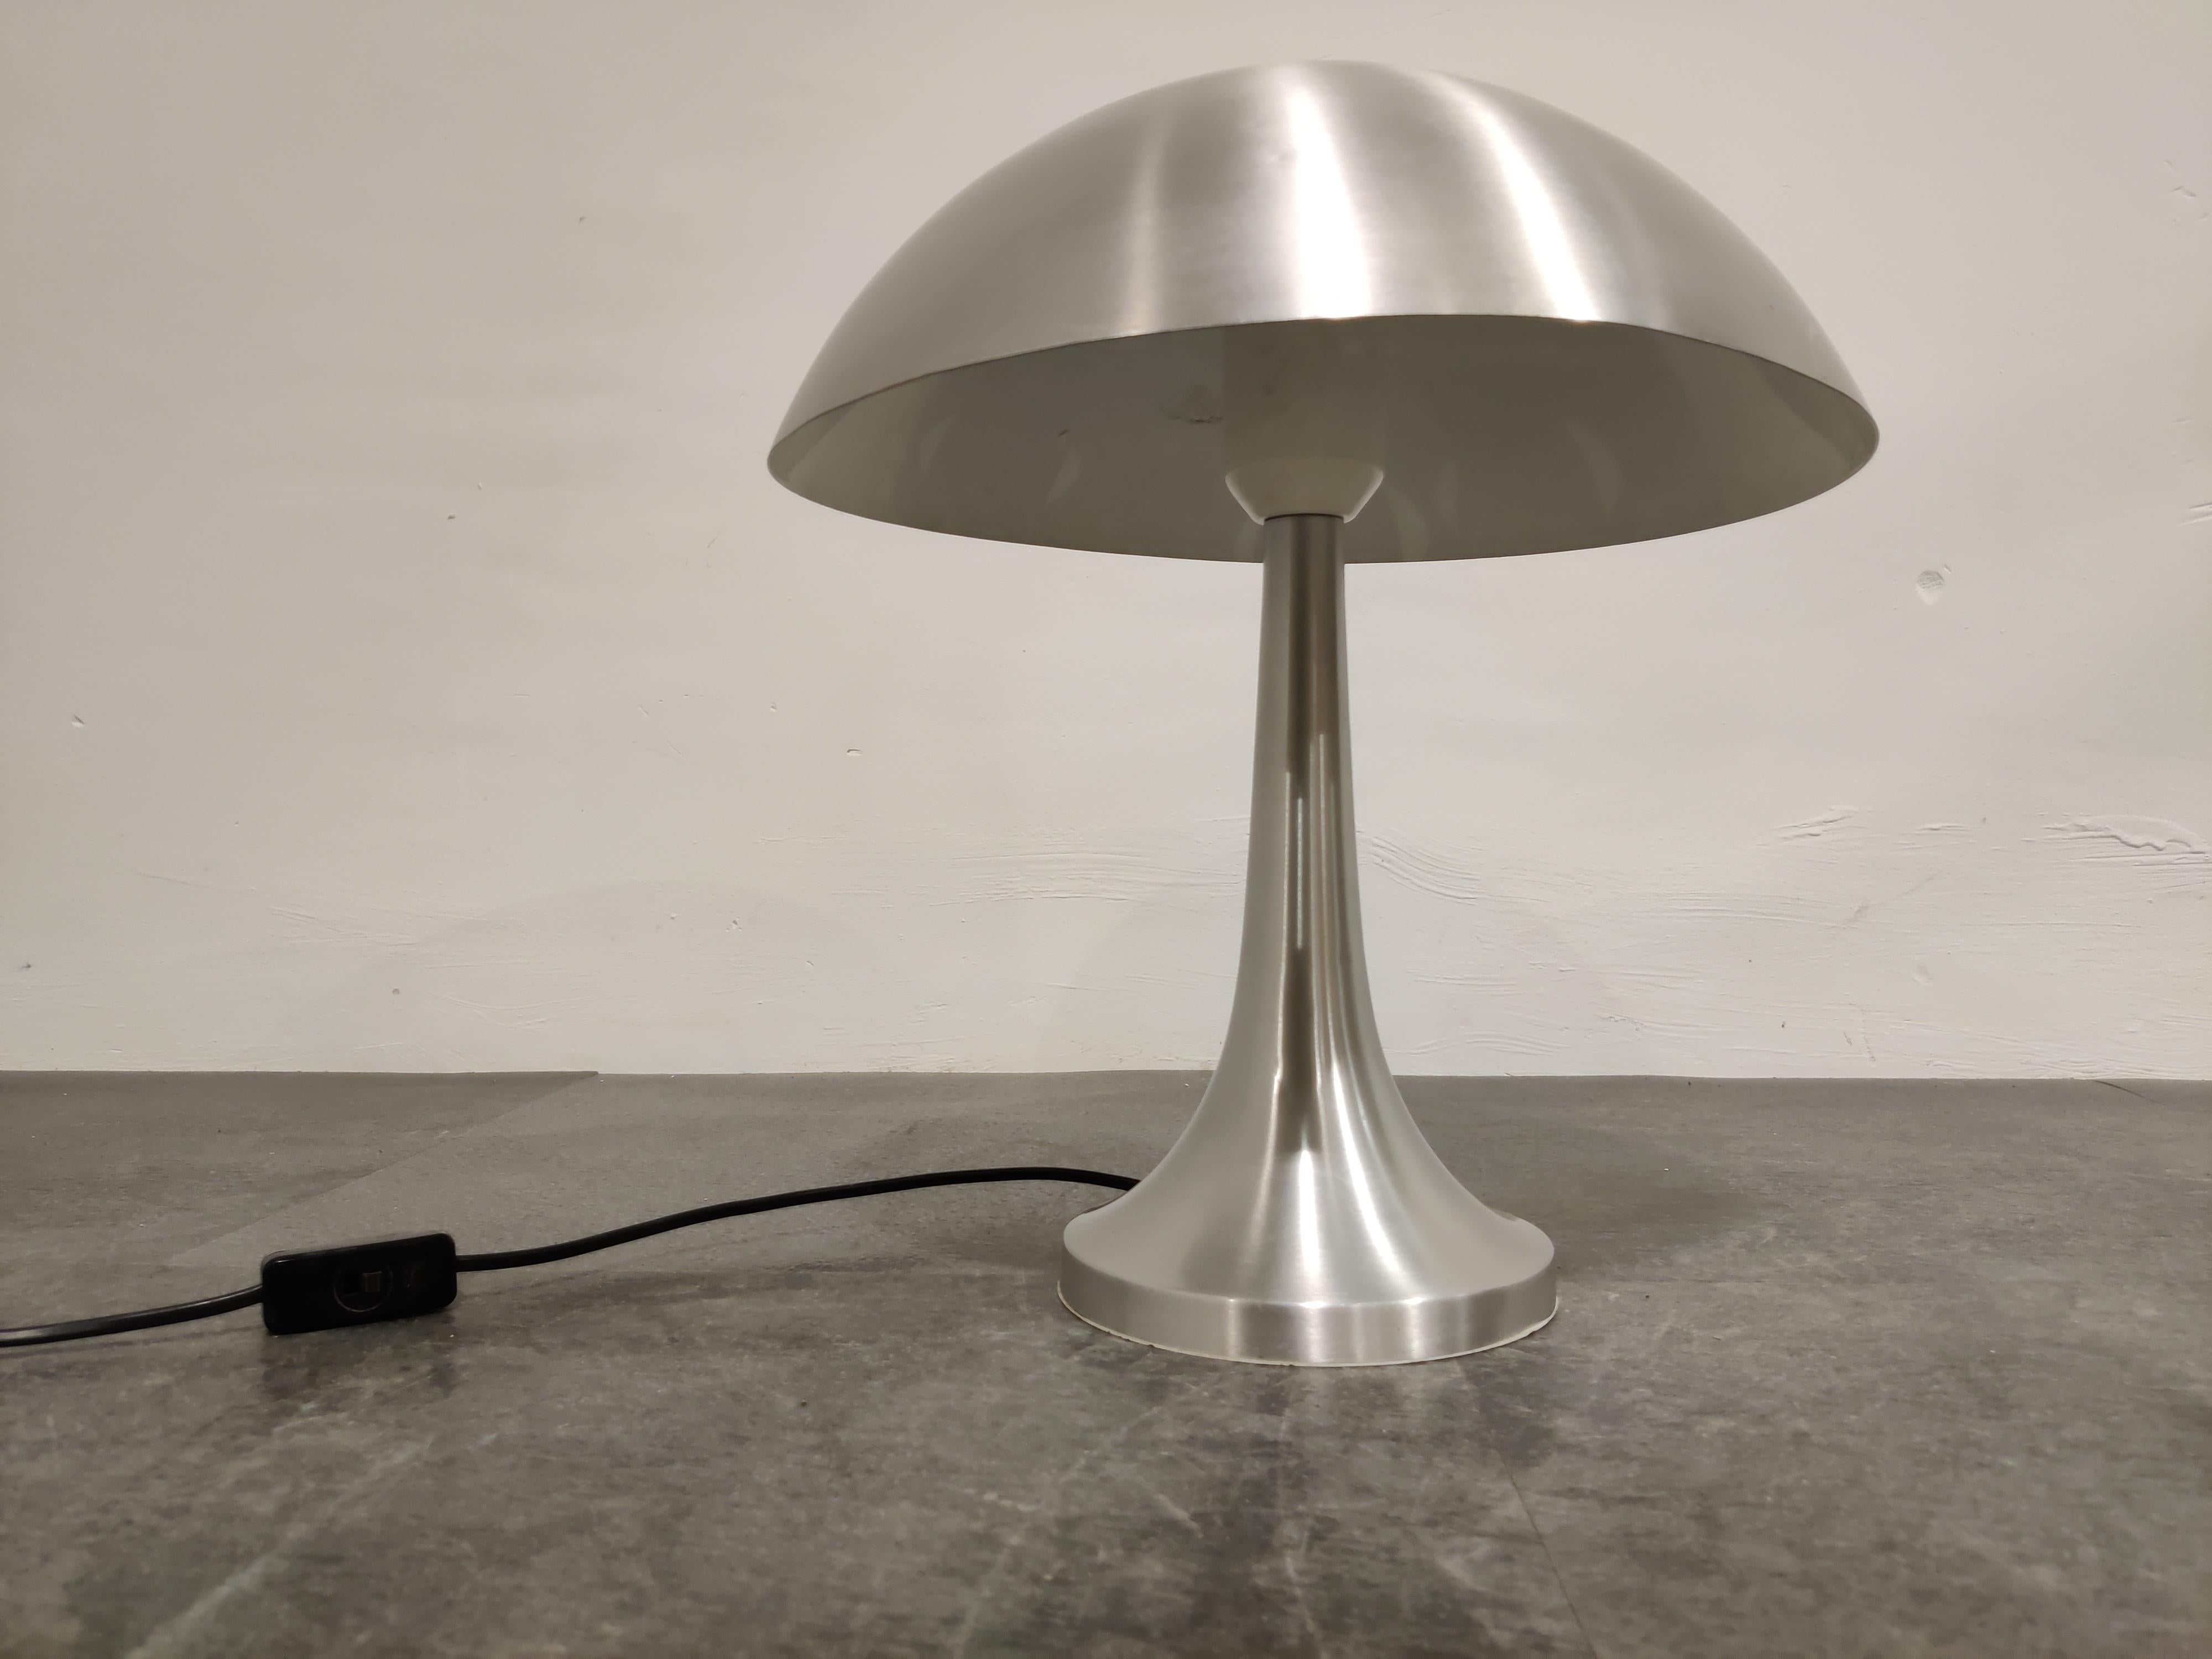 Vintage-Pilz-Tischlampe, entworfen von Louis Christiaan Kalff für Philips.

Die Lampe hat eine schöne Form und das Aluminium verleiht ihr eine besondere Note.

Zustand: Sehr kleine Dellen auf dem Schirm und einige Kratzer.

Geprüft und